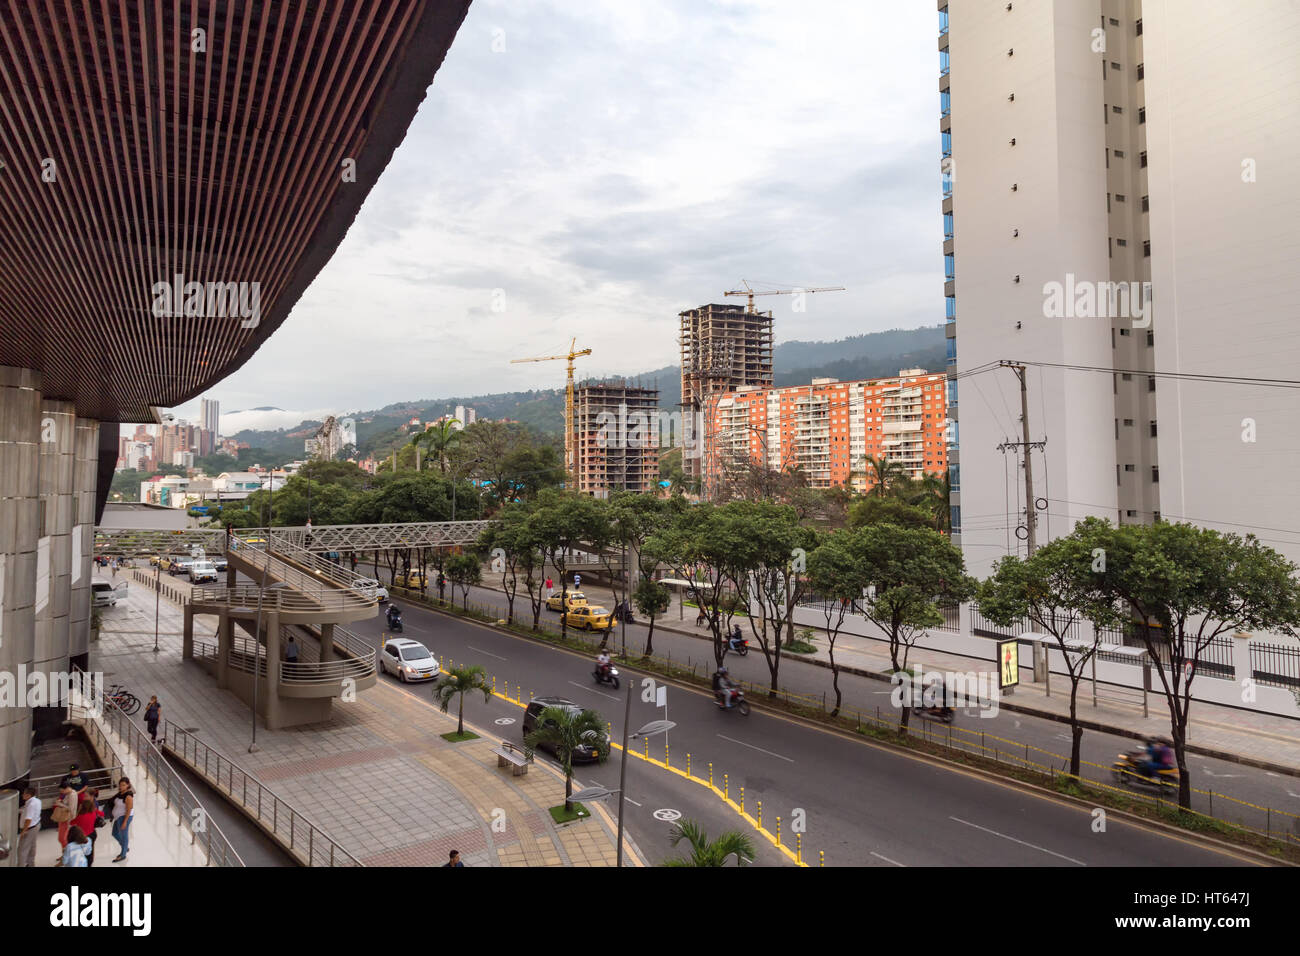 BUCARAMANGA, COLOMBIA - 2 de mayo: el tráfico pasa el Centro Comercial Cacique el 2 de mayo de 2016 en la ciudad de Bucaramanga, Colombia. Foto de stock